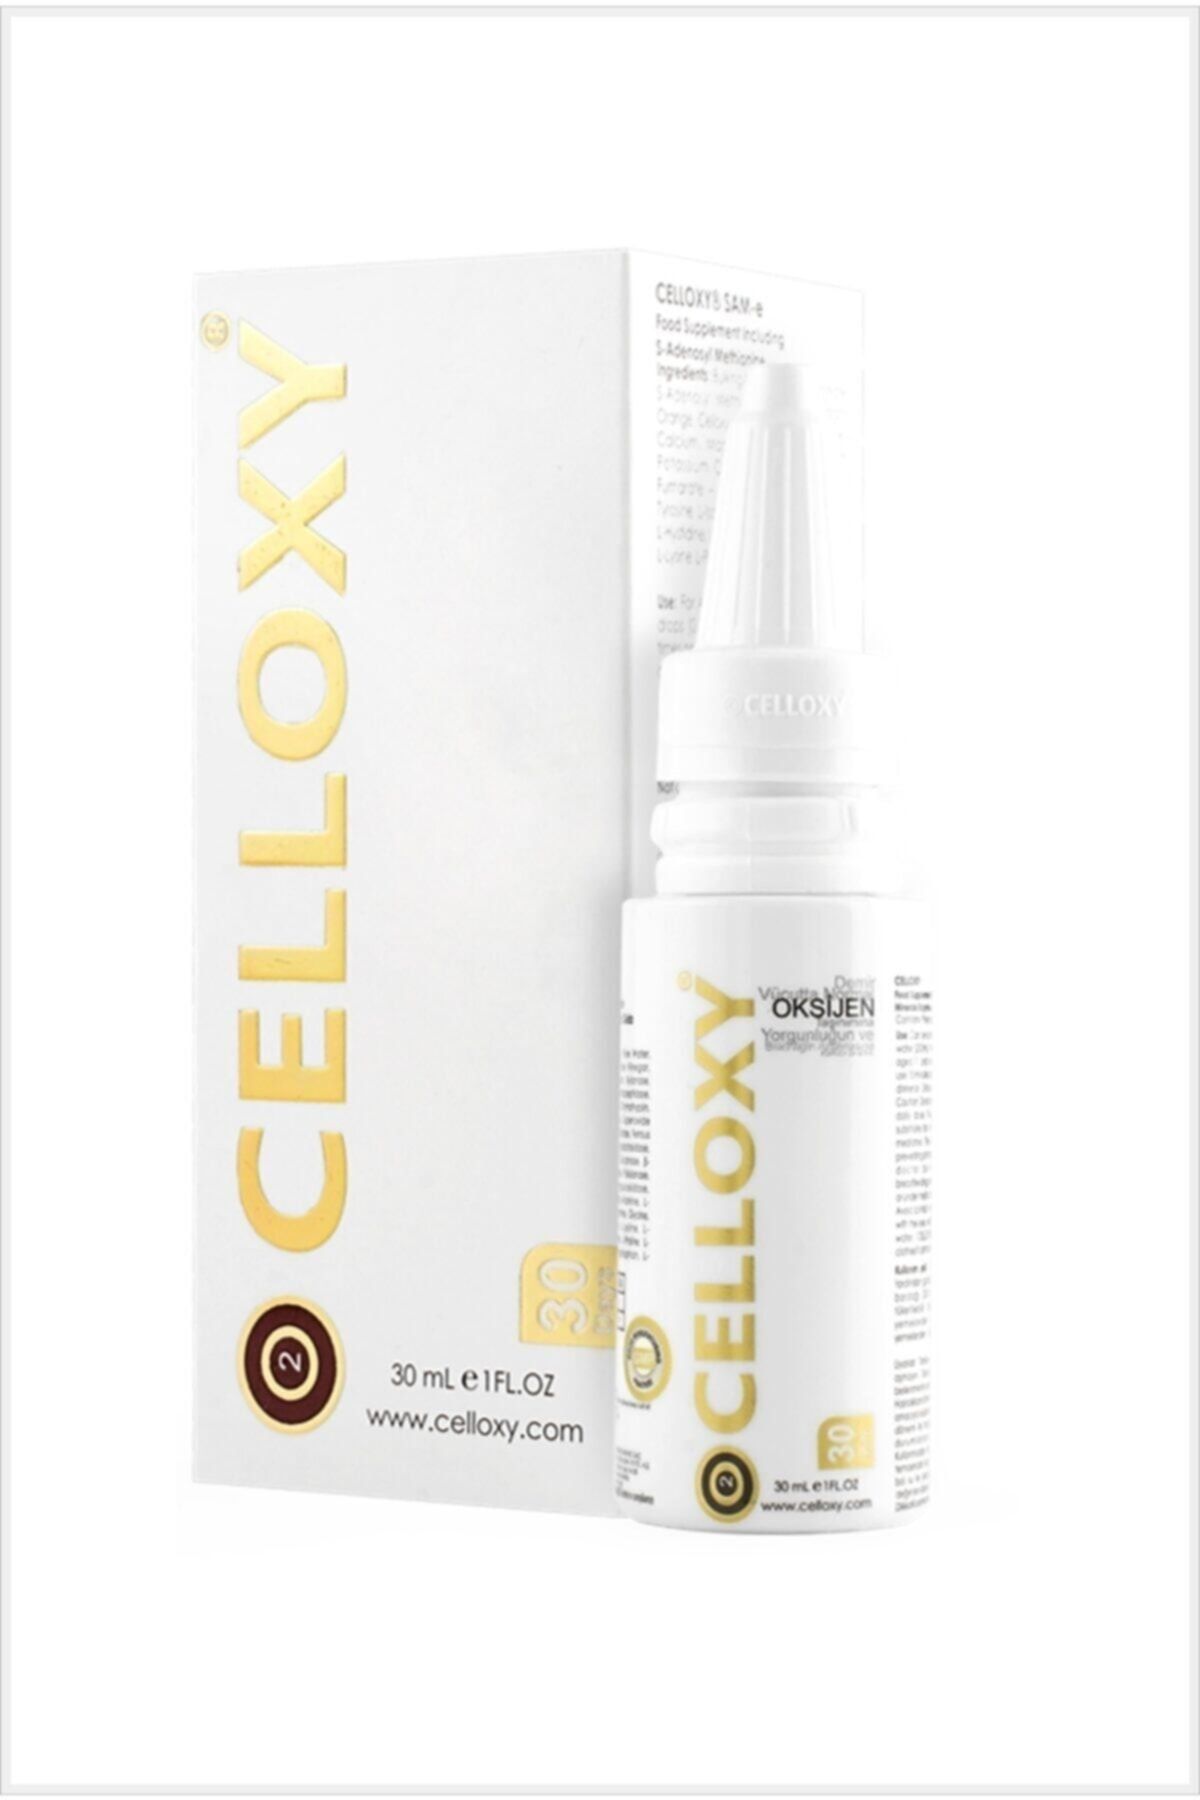 Celloxy Oksijen Damla- Hücresel Emilimli Sıvı Gıda Takviyesi